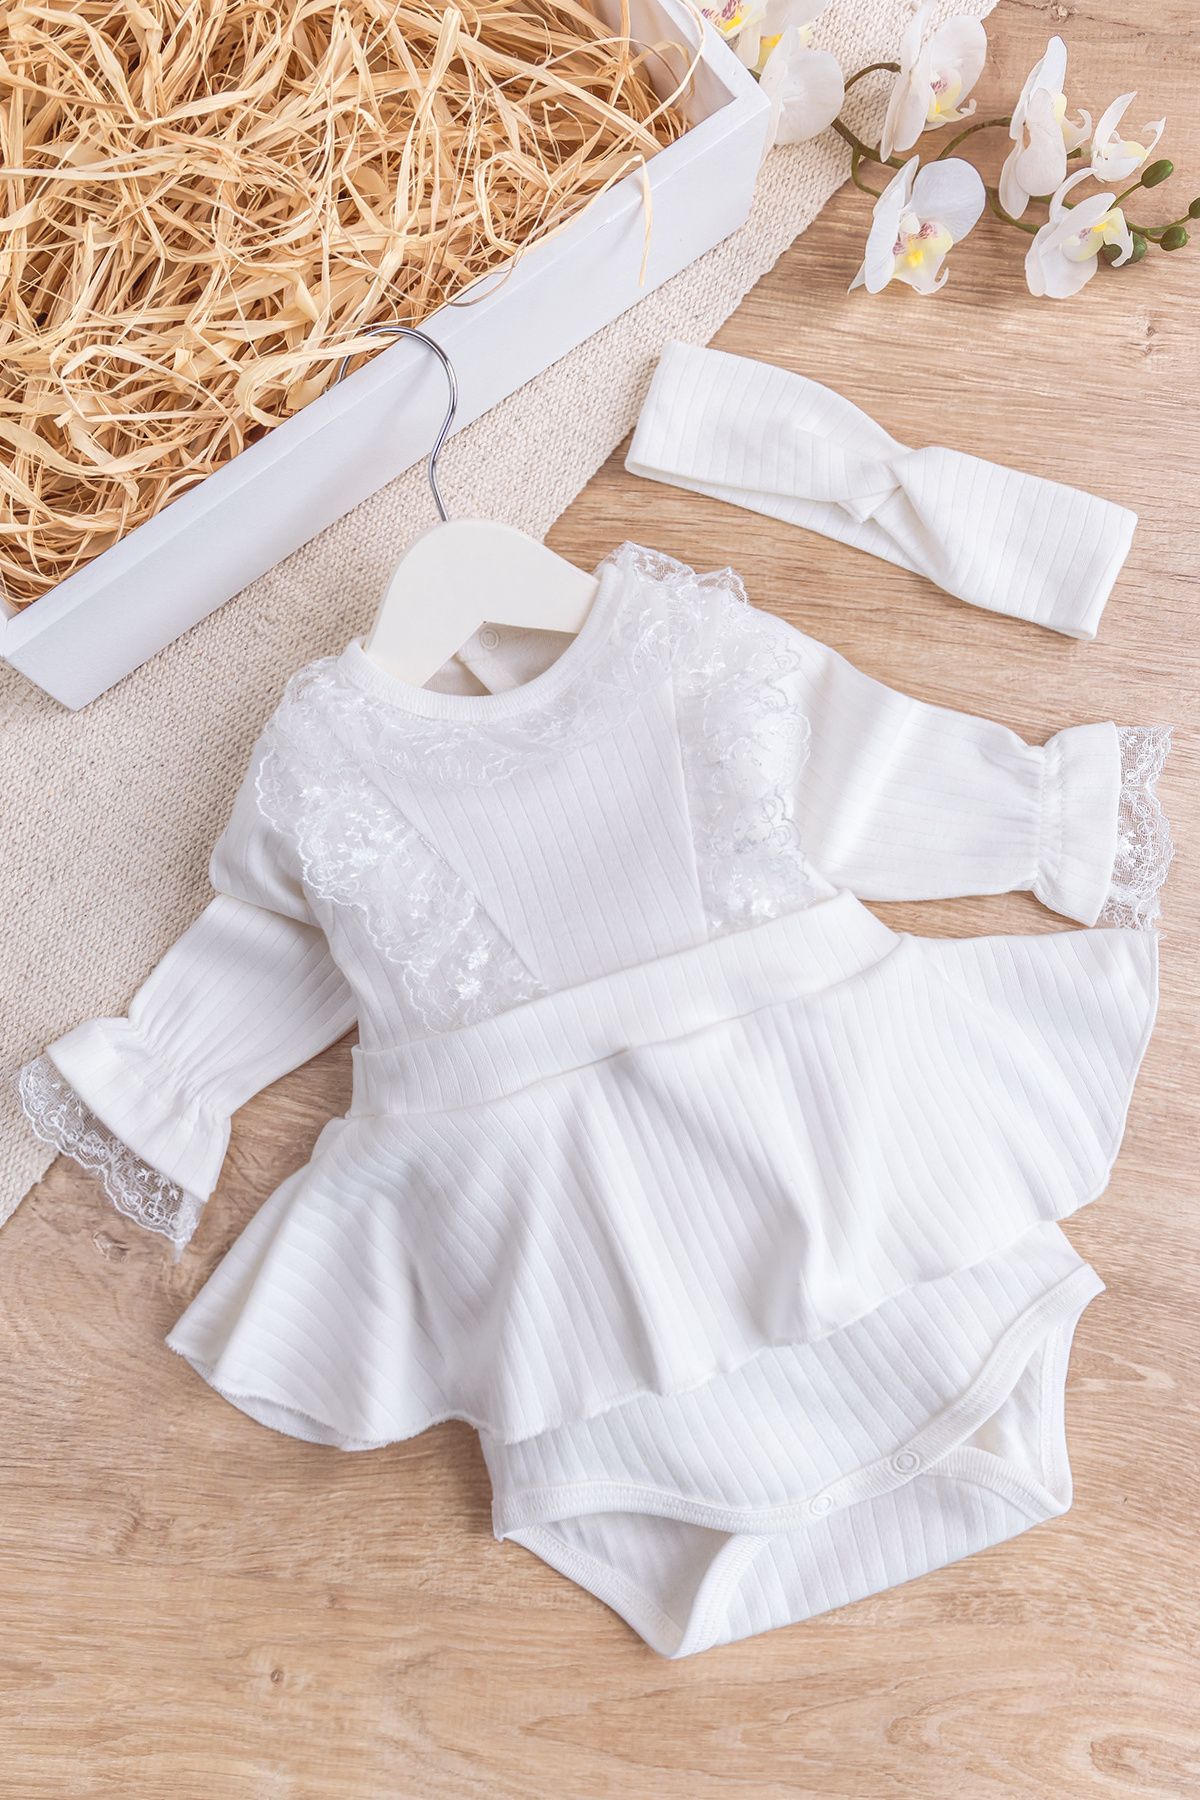 Babymod Dantel Yakalı Bandanalı Kız Bebek Elbise Bebek Tulum